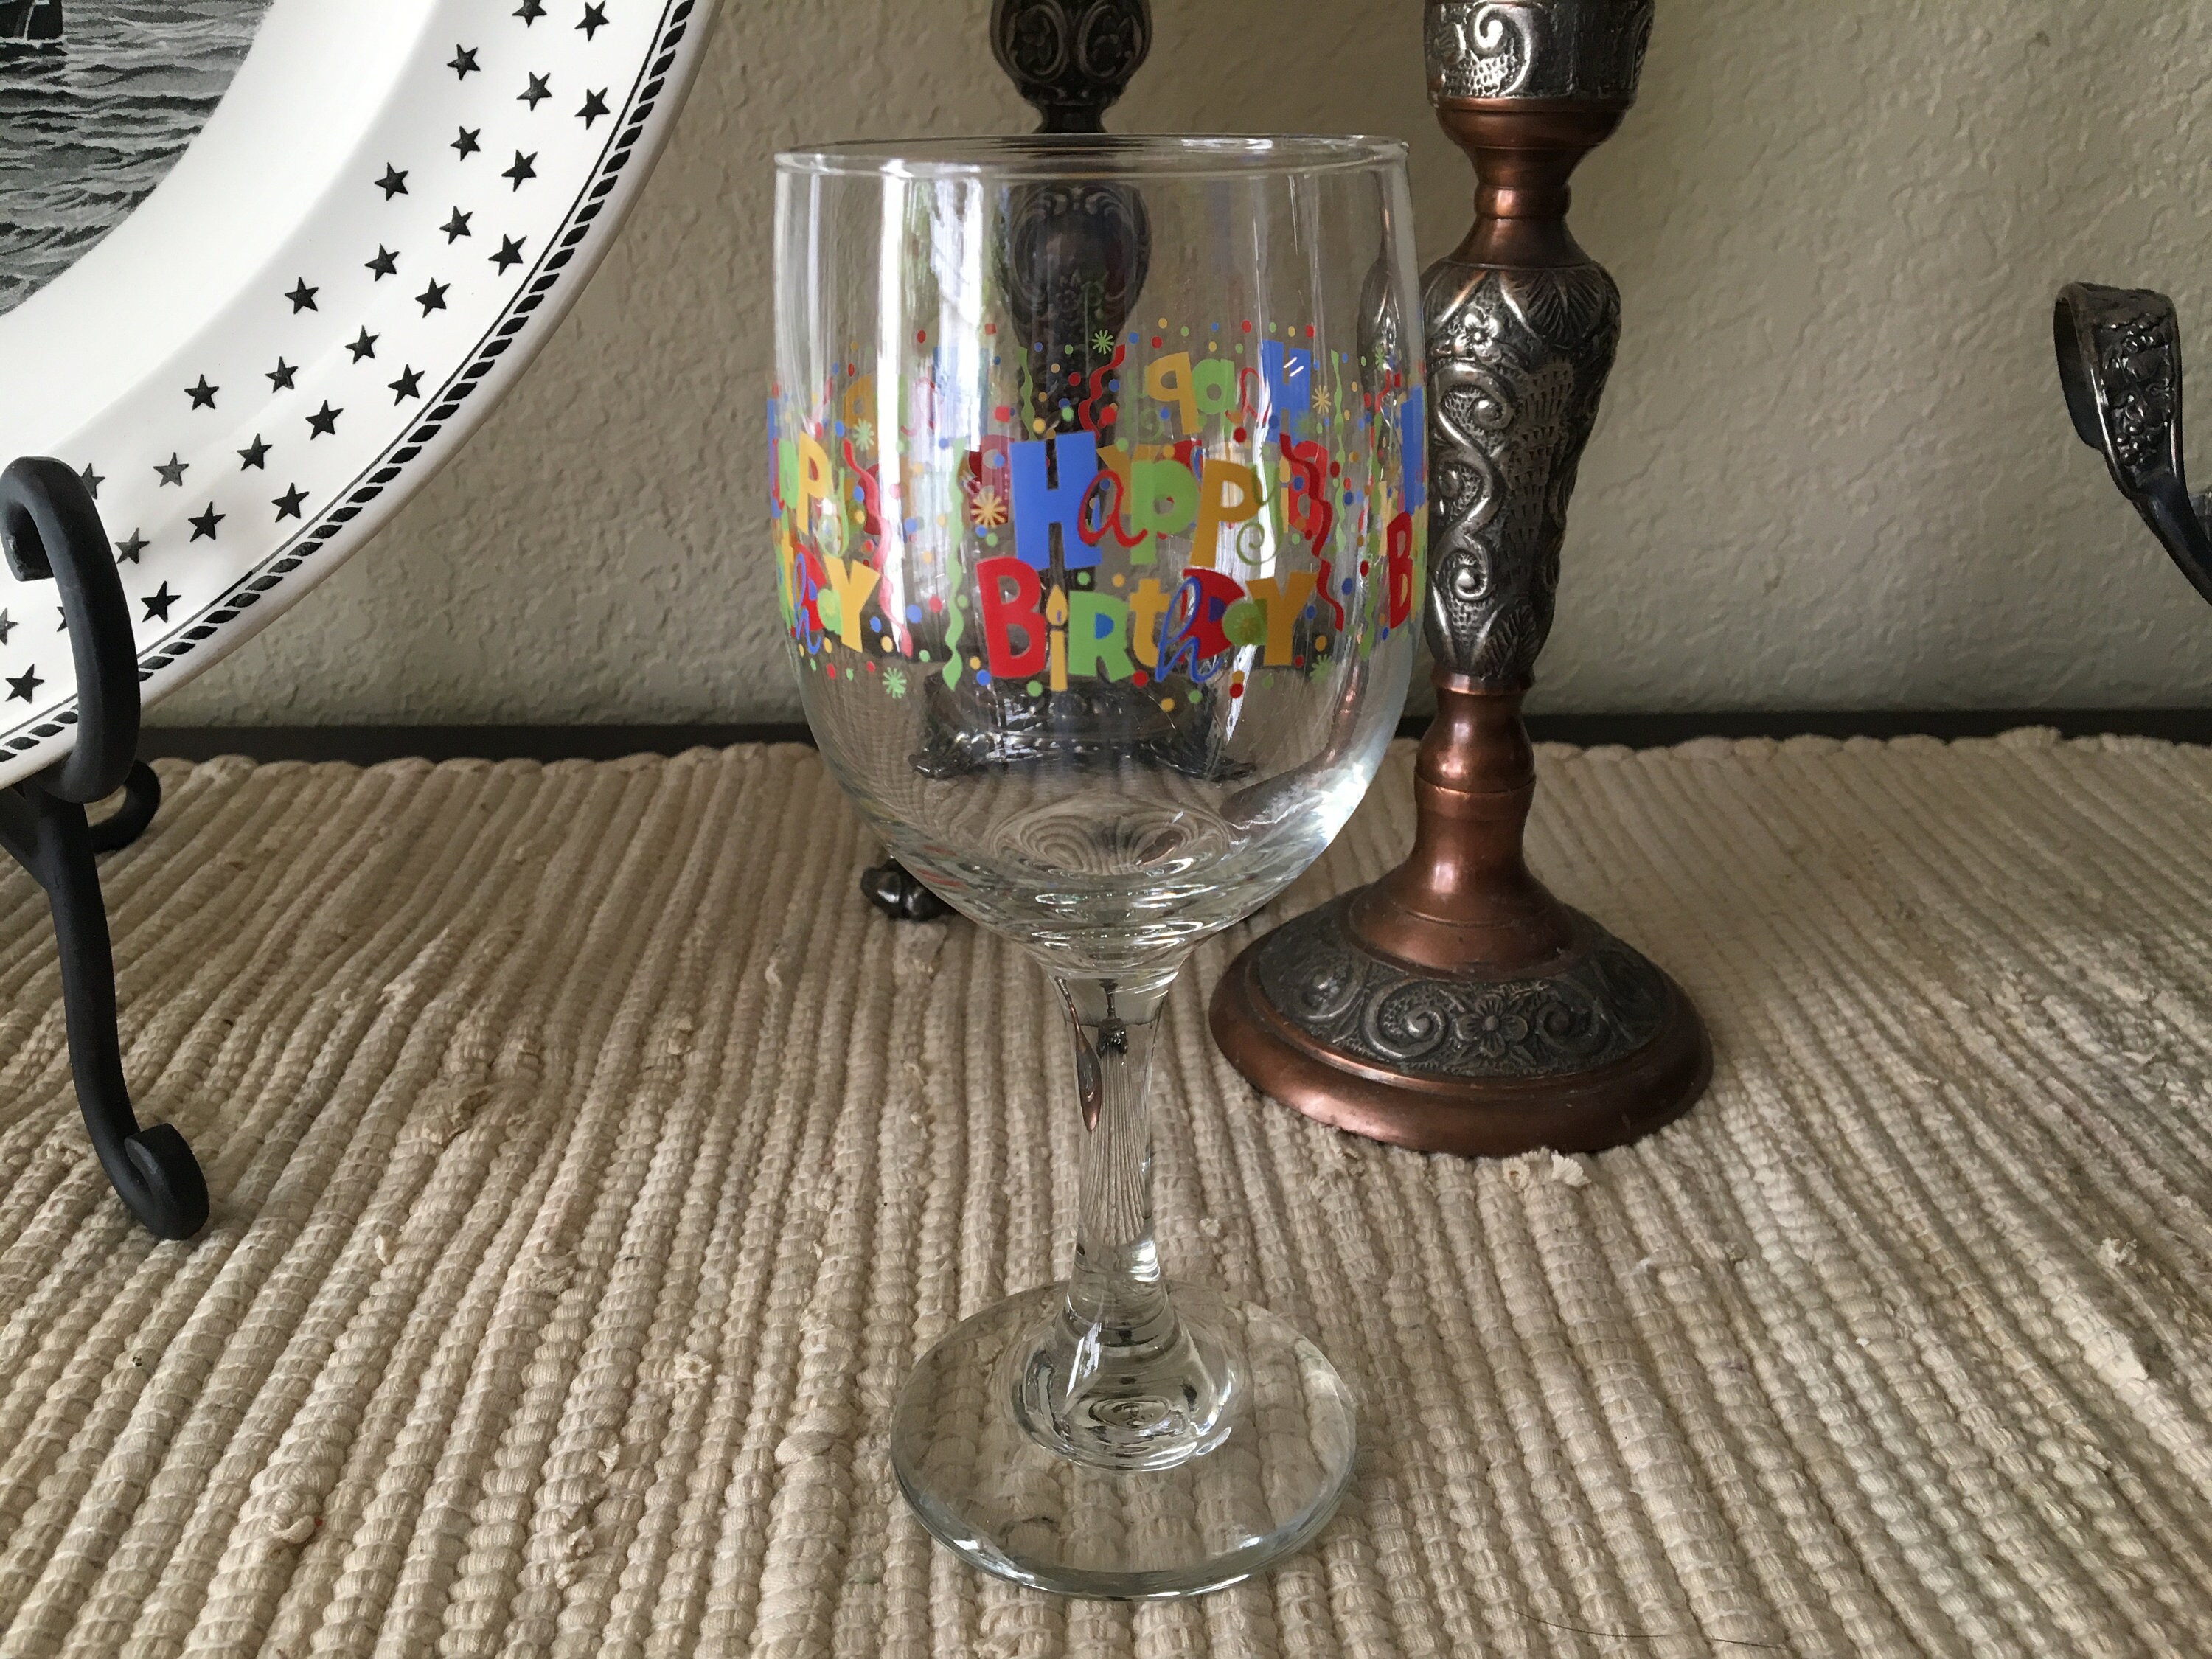 Lv wine glass